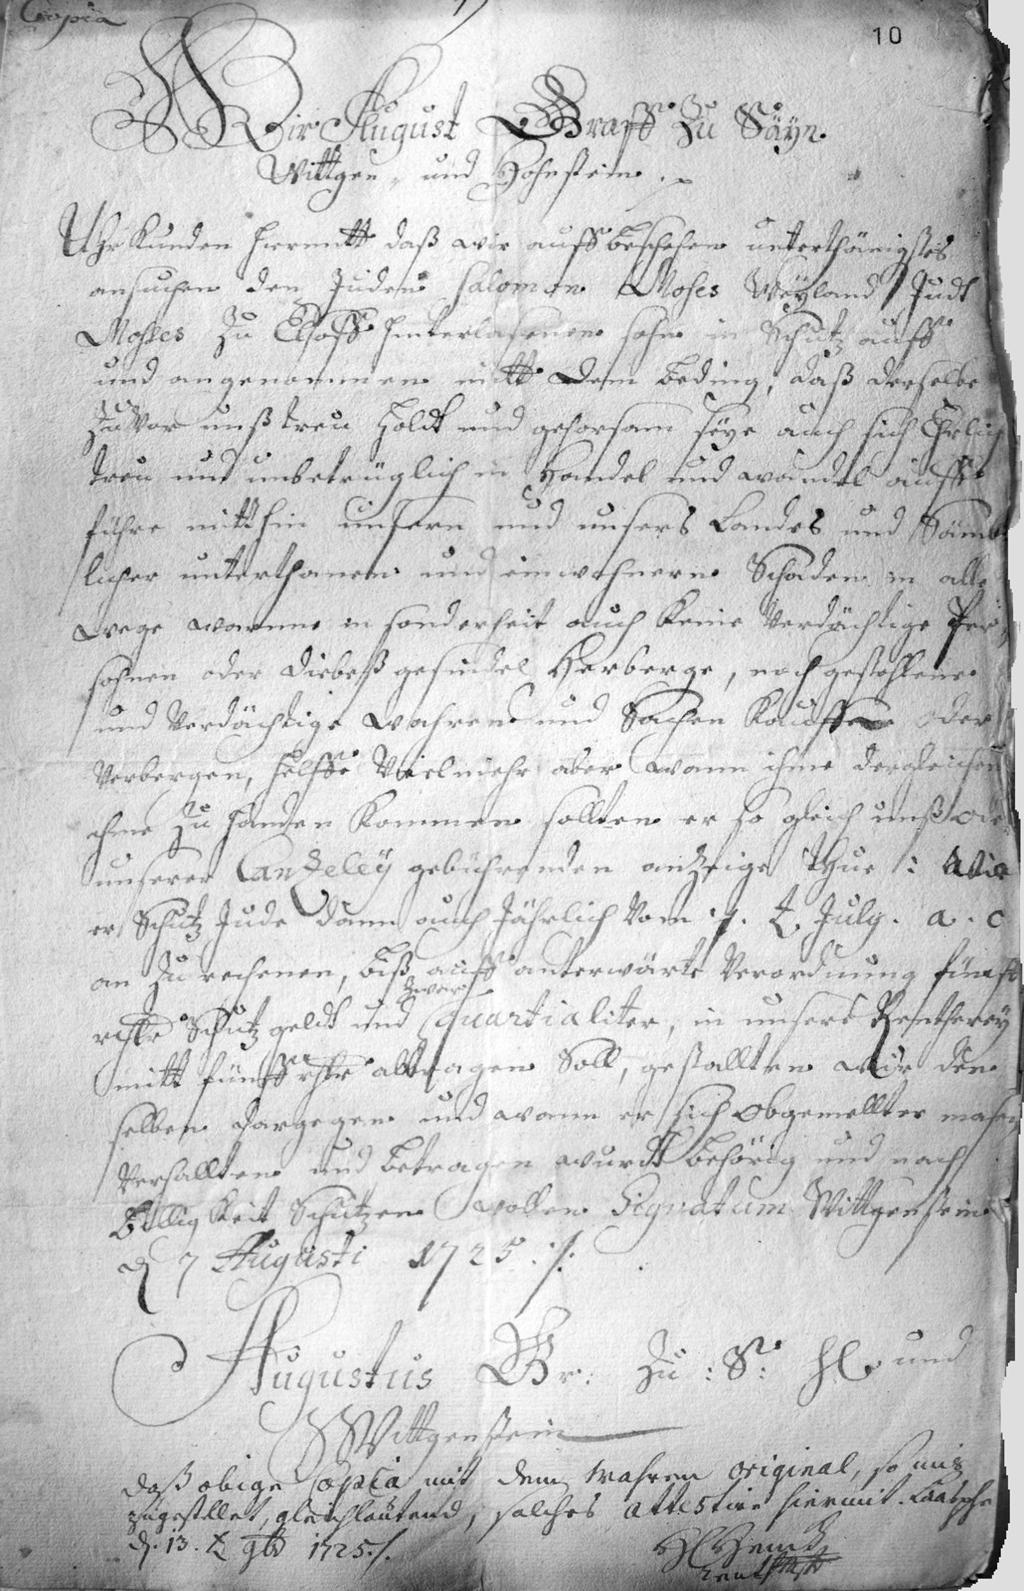 Dokumente Anhang I (S. 64-80) Urkunde ausgestellt durch Graf August zu S. H. und Wittgenstein am 07. August 1725.